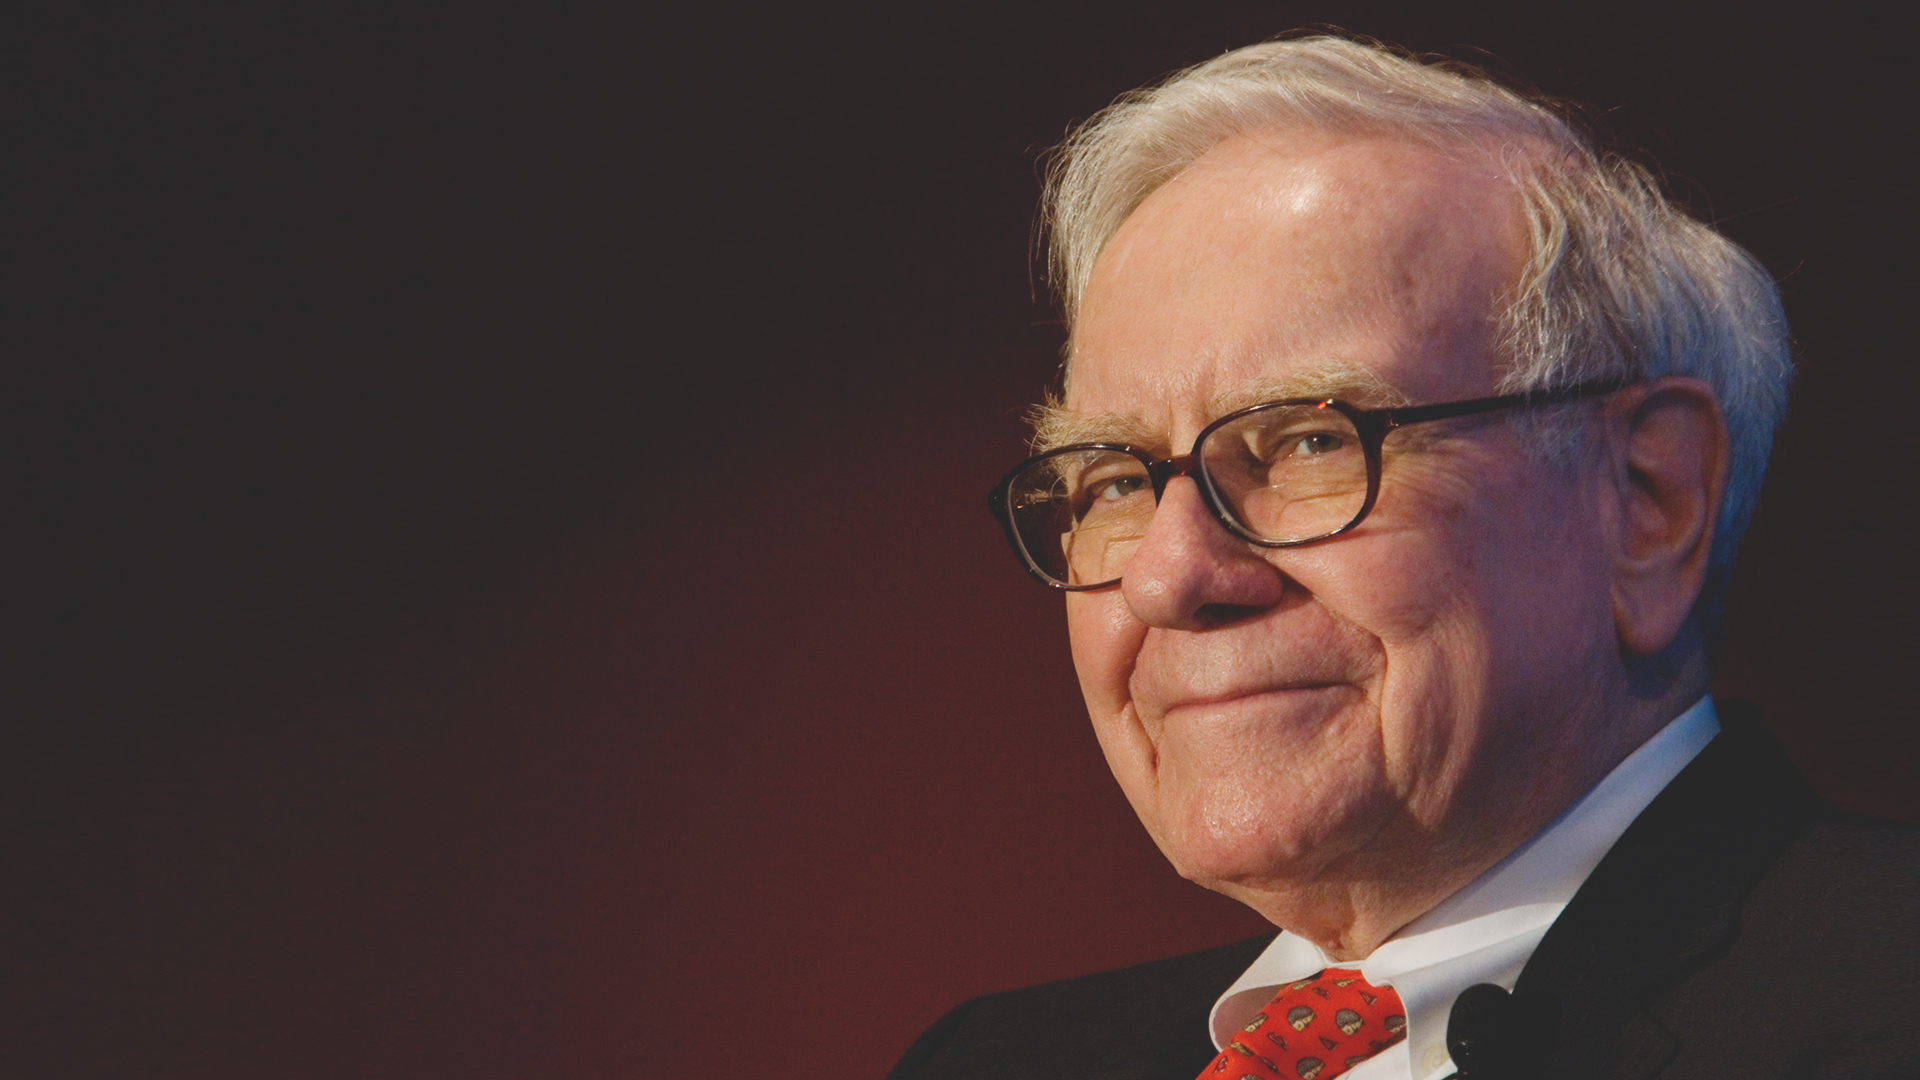 Warren Buffett - milyarder, Amerikalı iş adamı ve hayırsever kaynak Wallstreetplaybook